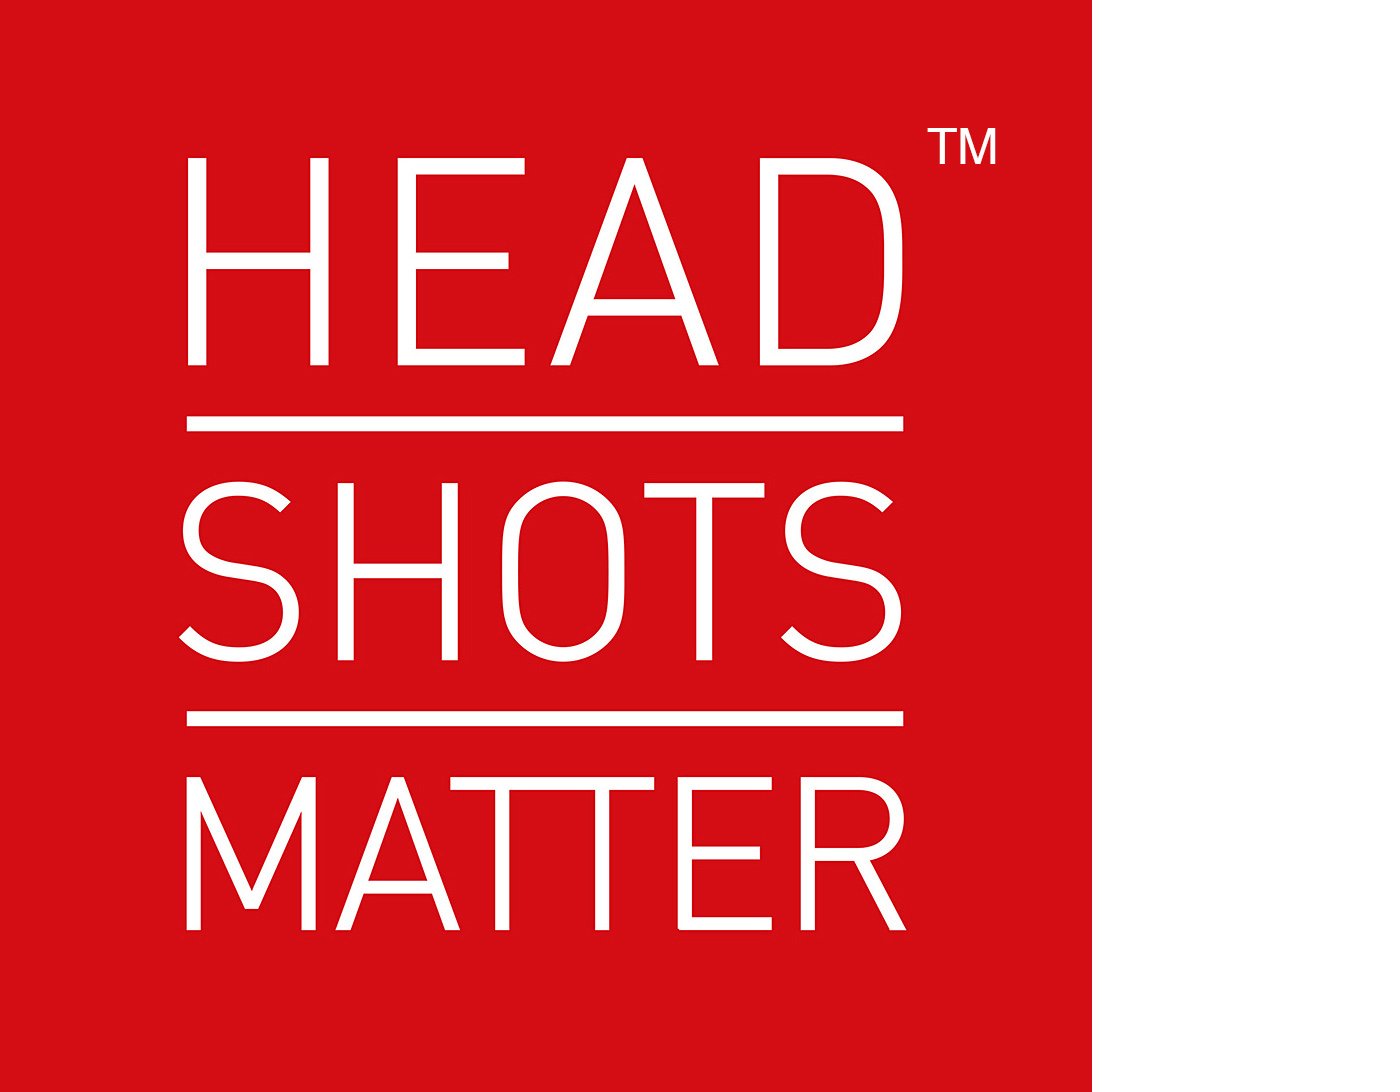 Headshots Matter